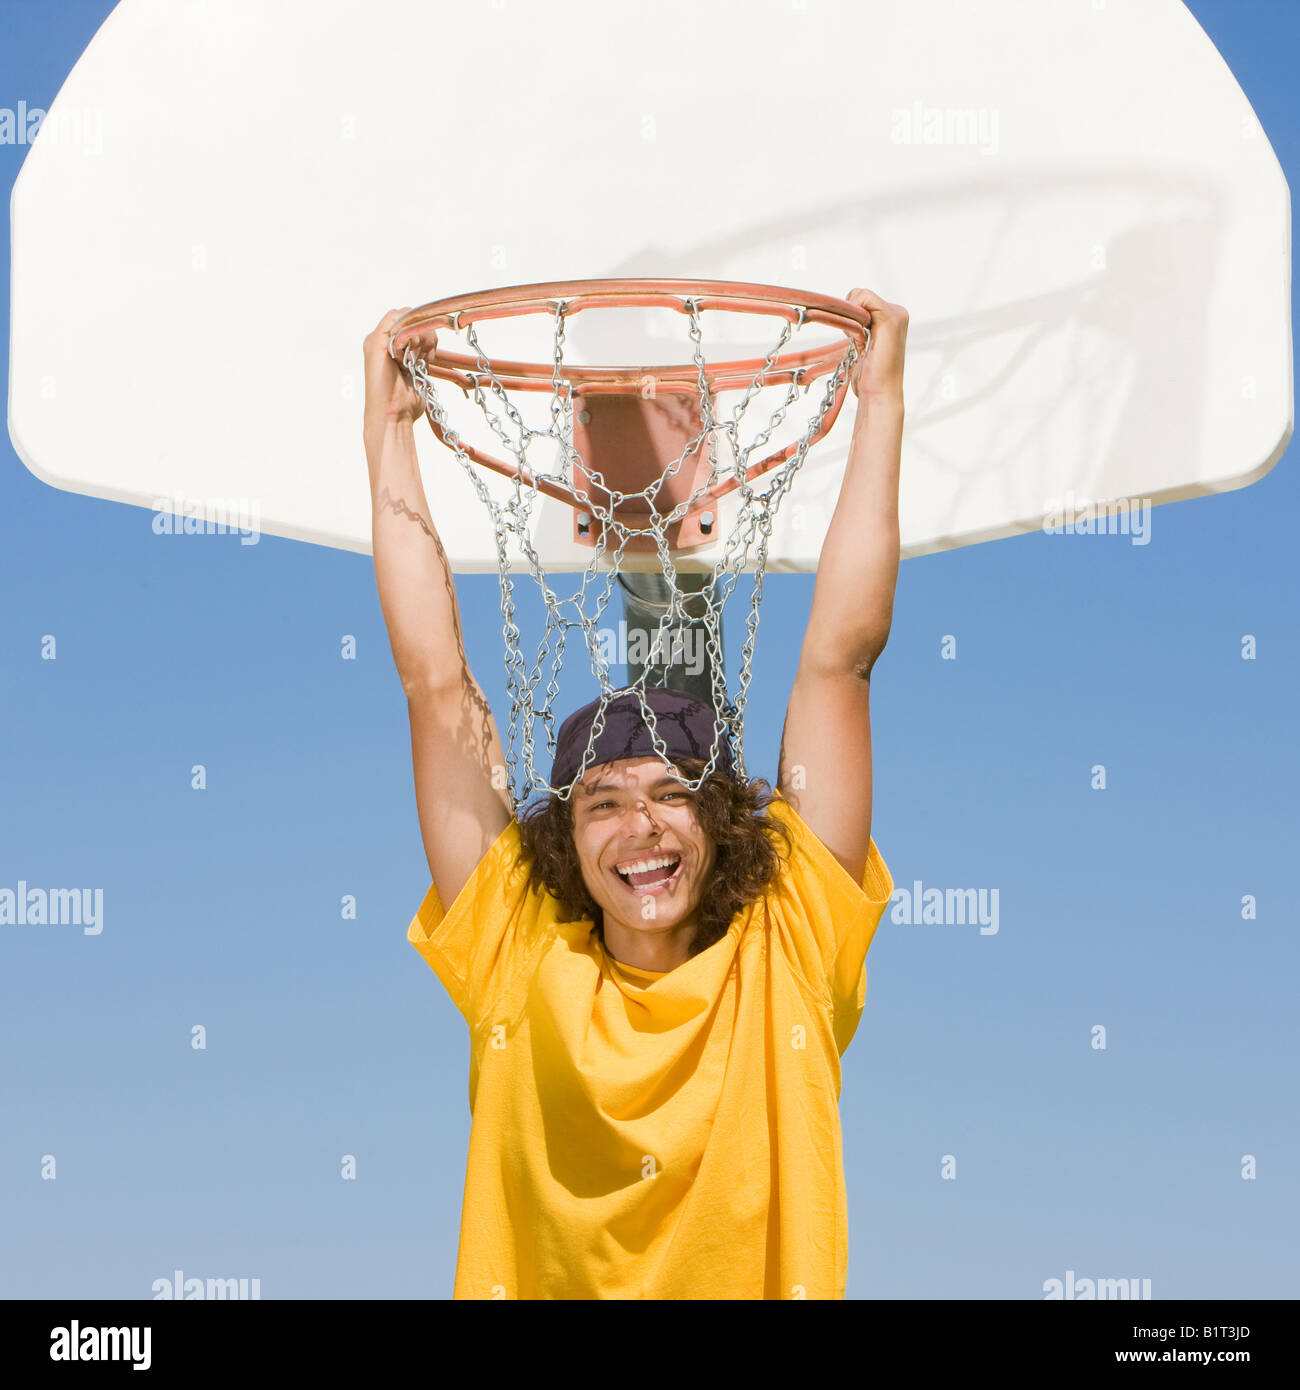 Un joueur de basket-ball de l'adolescence se bloque à partir d'un panier de basket-ball et de sourires Banque D'Images